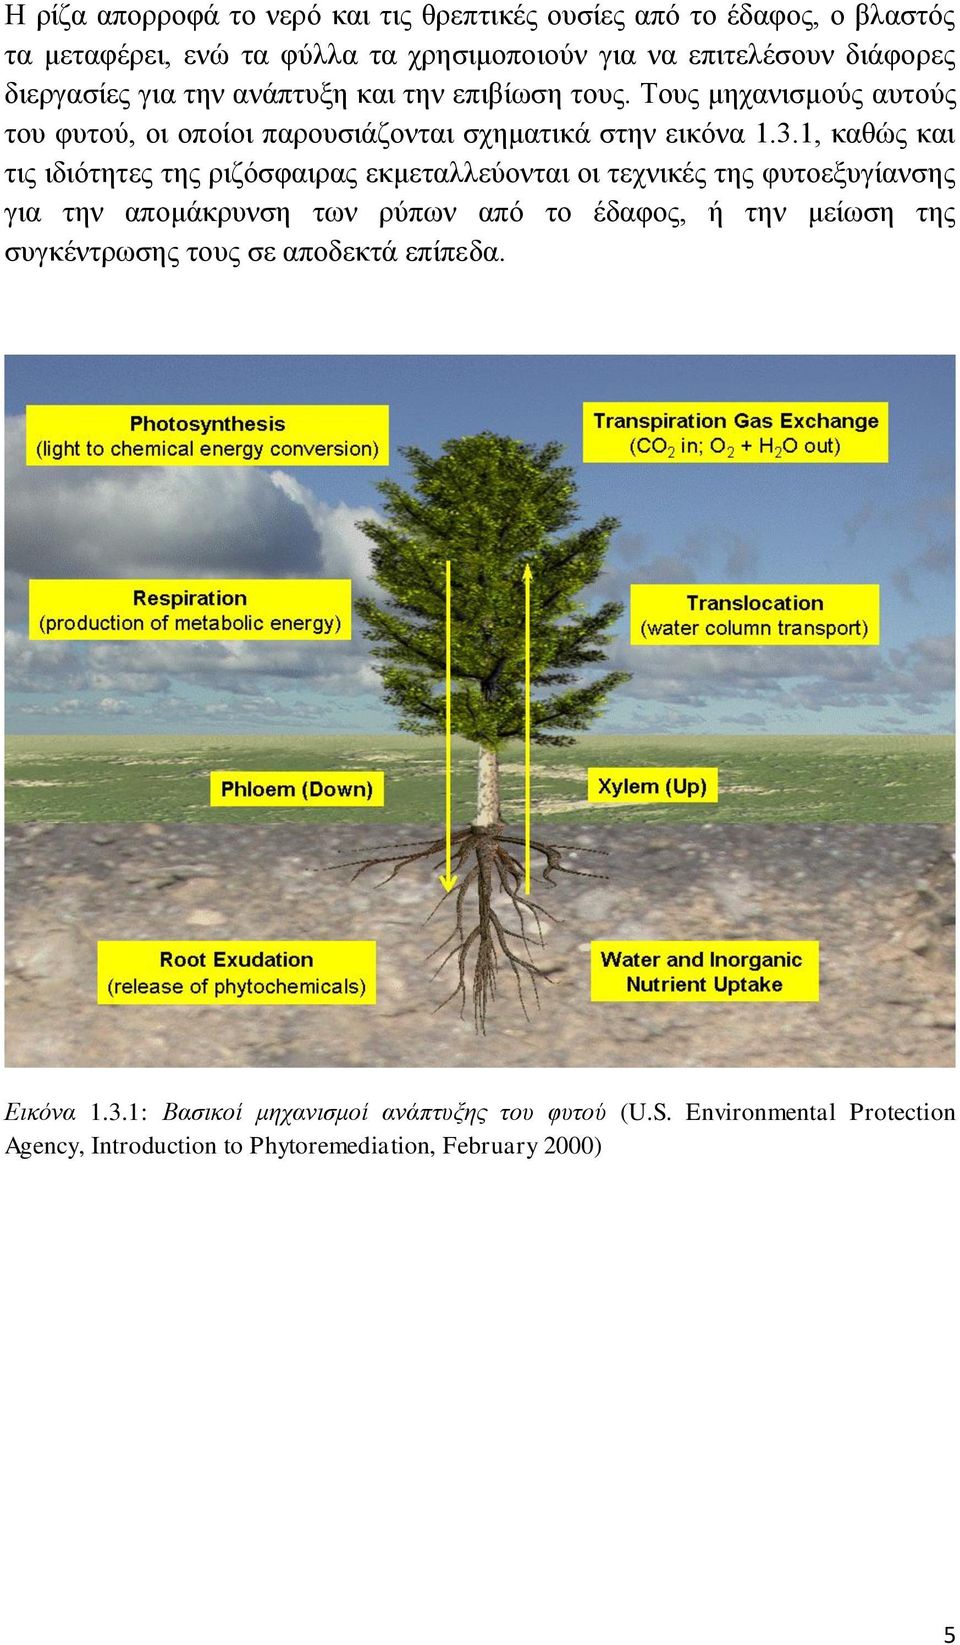 1, καθώς και τις ιδιότητες της ριζόσφαιρας εκμεταλλεύονται οι τεχνικές της φυτοεξυγίανσης για την απομάκρυνση των ρύπων από το έδαφος, ή την μείωση της